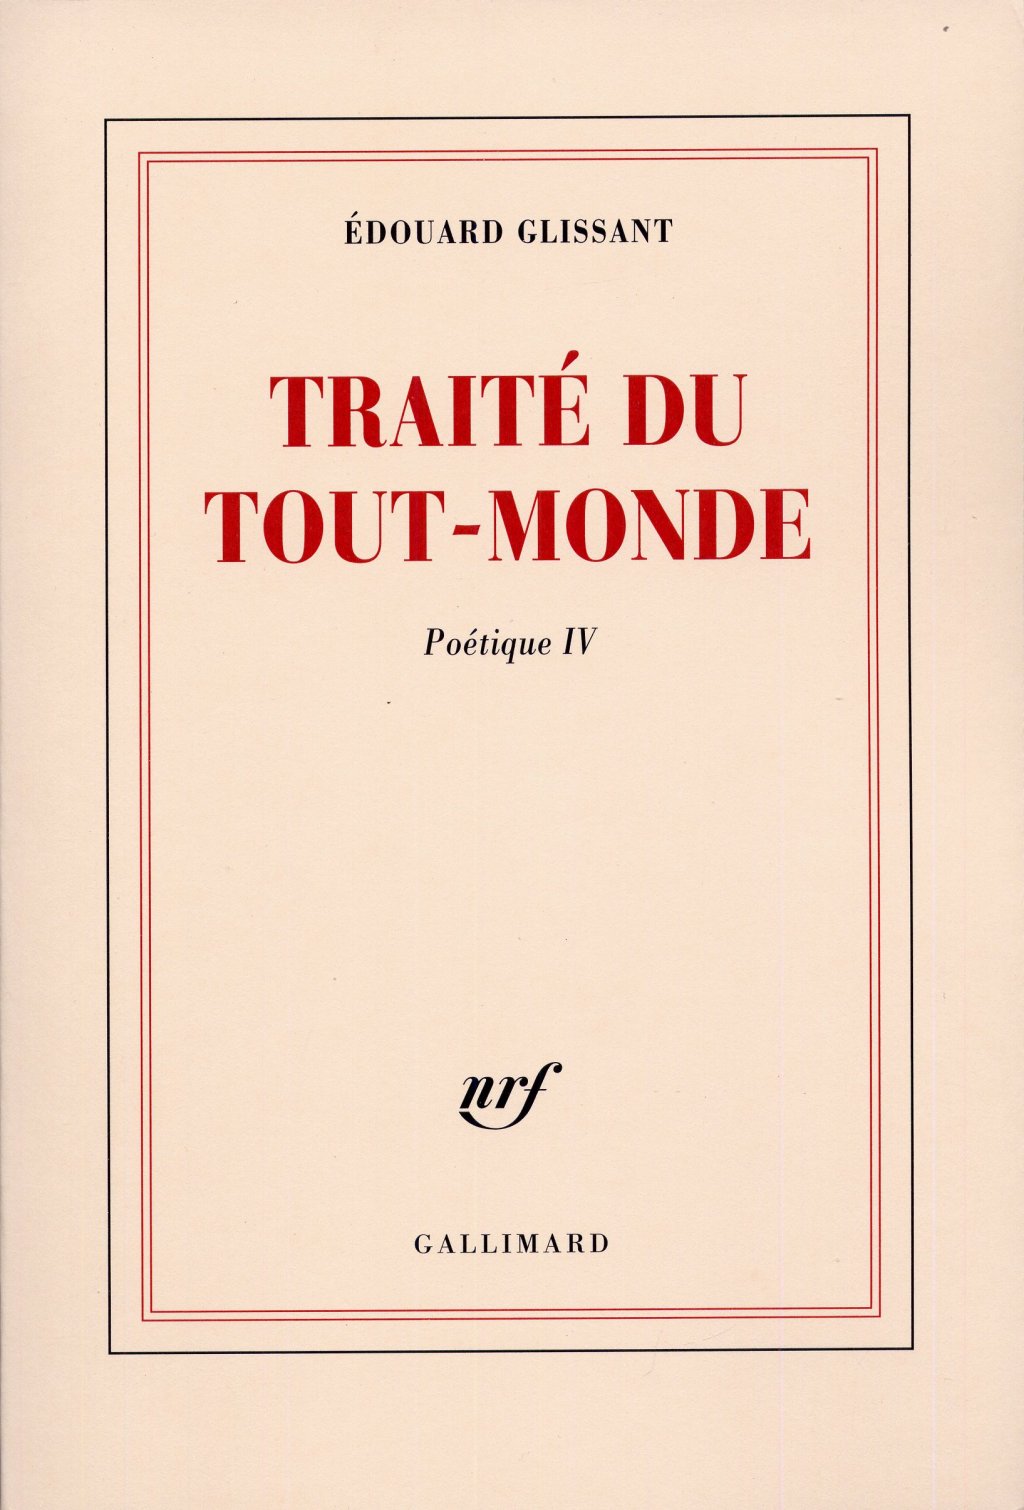 Edouard Glissant - Traité de Tout-Monde